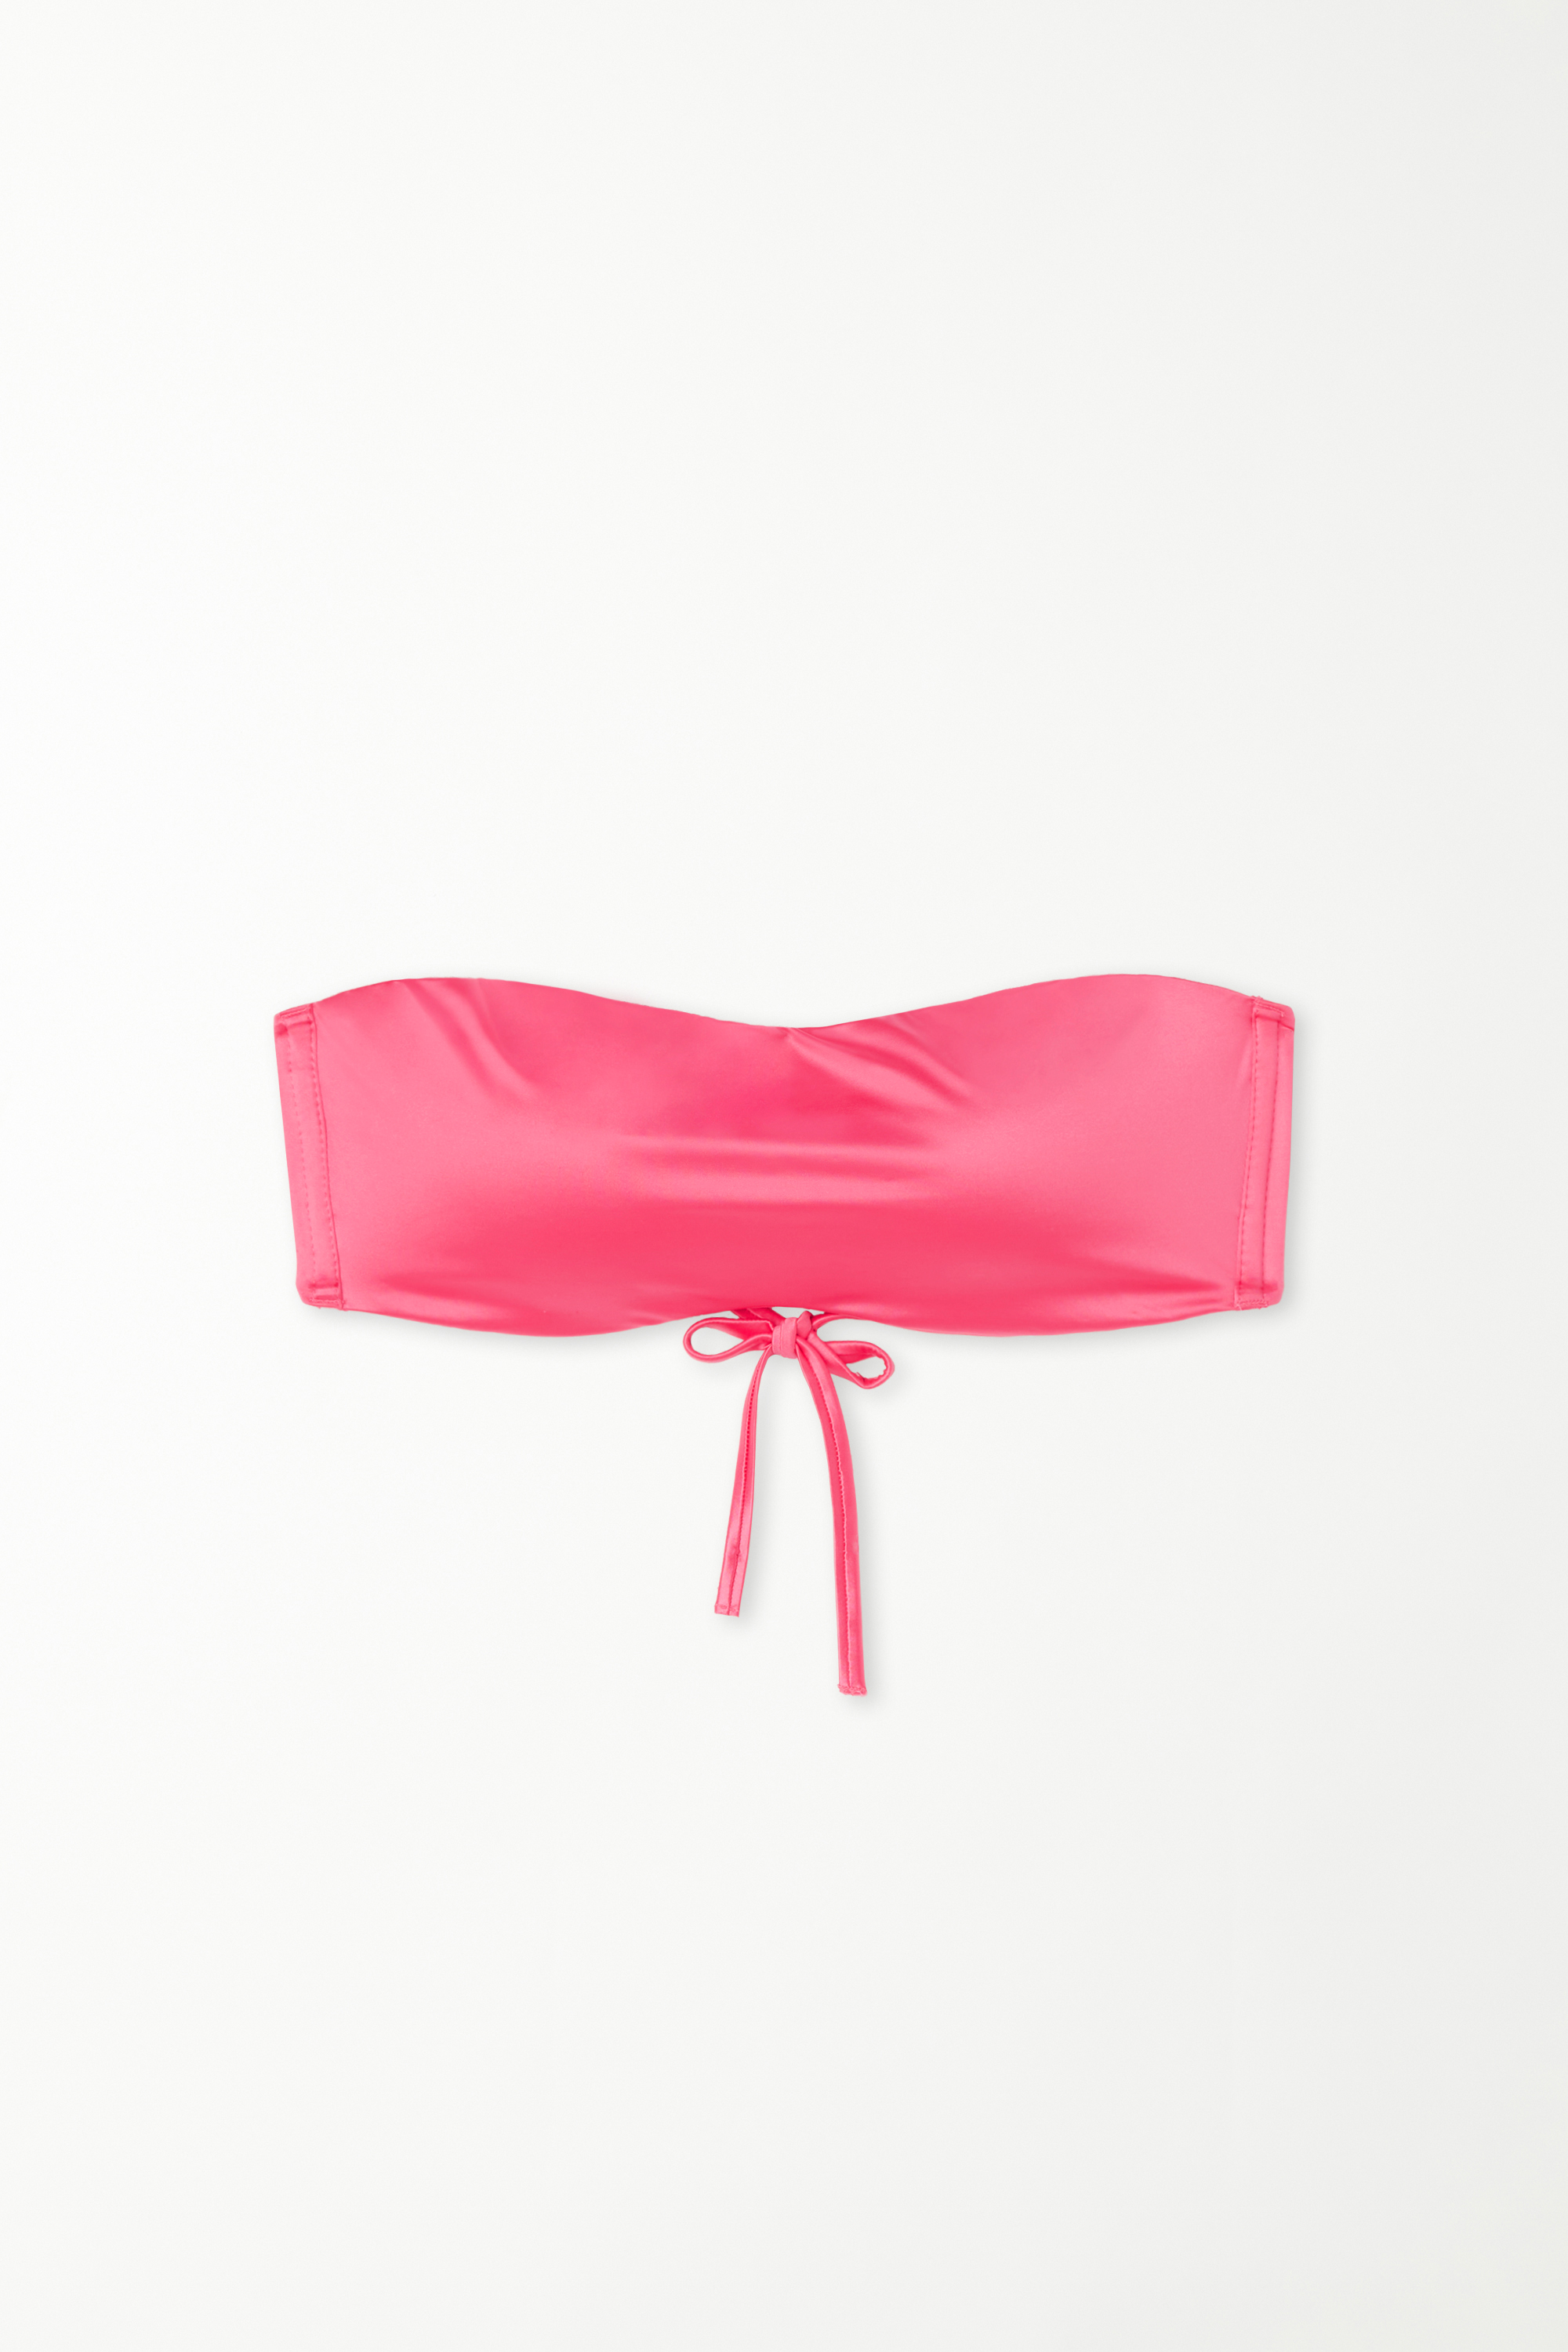 Bandeau-Bikinioberteil mit herausnehmbaren Polstern Shiny in sommerlichem Rosa